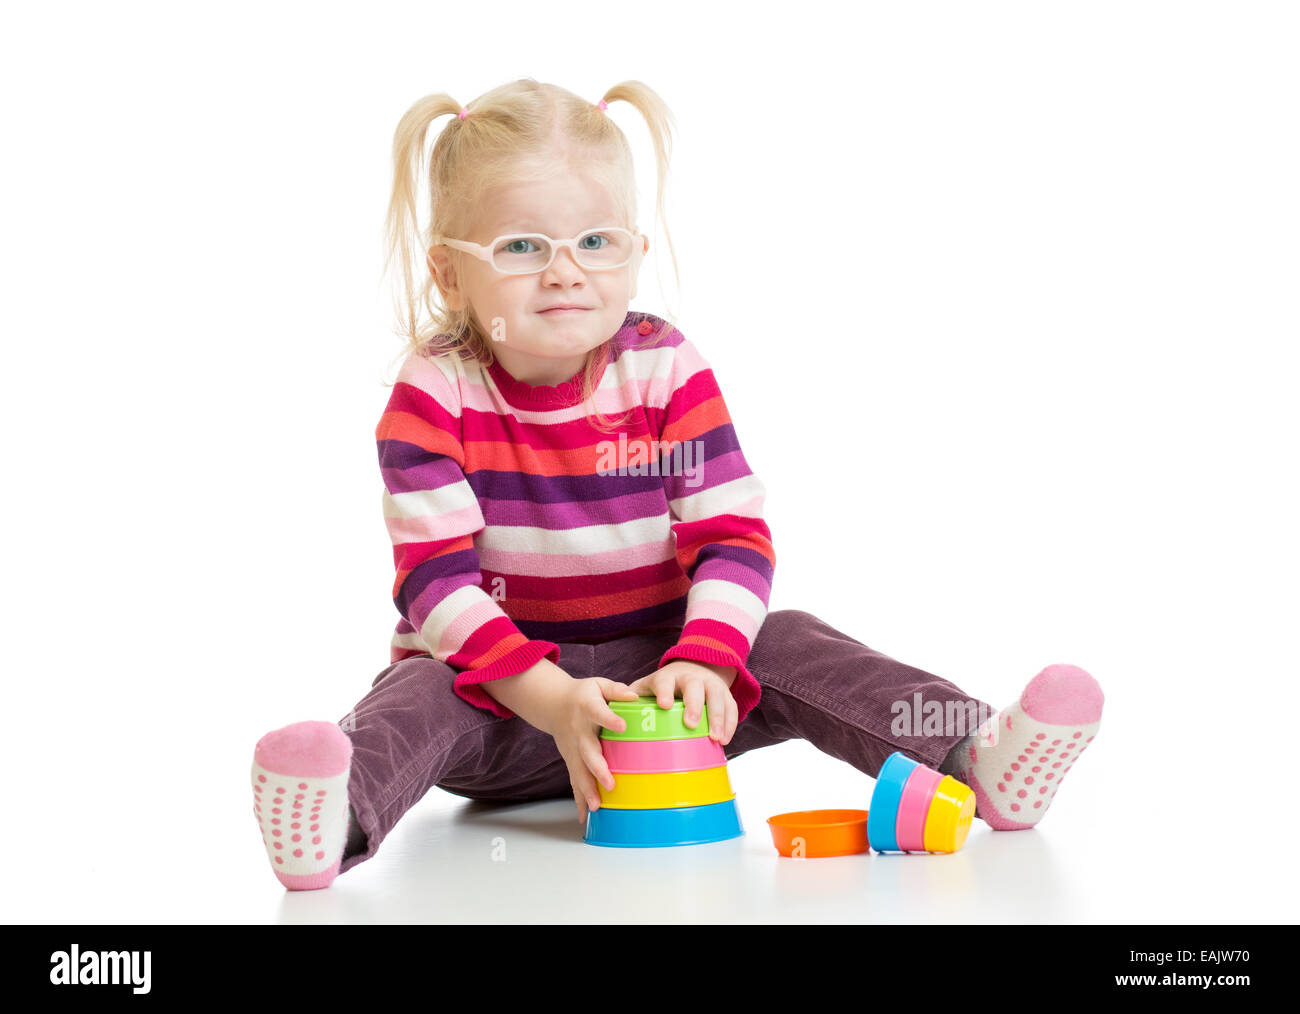 Dans eyeglases drôle enfant jouet jeu pyramide colorés isolé Banque D'Images